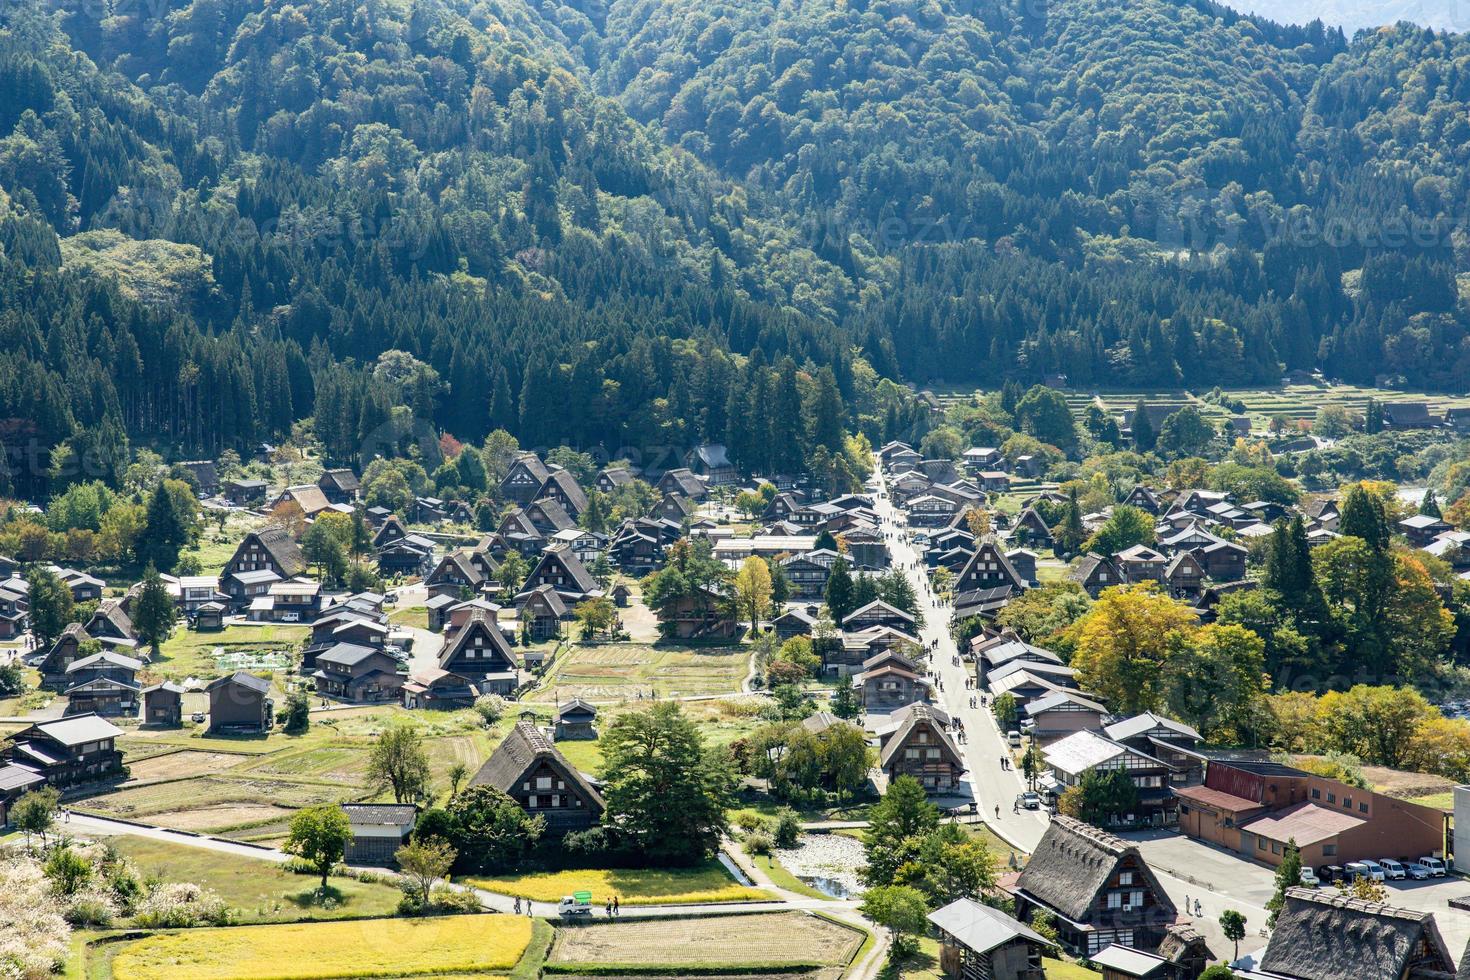 shirakawa japonais historique. village de shirakawago en automne depuis la vue aérienne. maison construite en bois avec toit de style gassho zukuri. shirakawa-go est le patrimoine mondial de l'unesco et un point de repère au japon photo